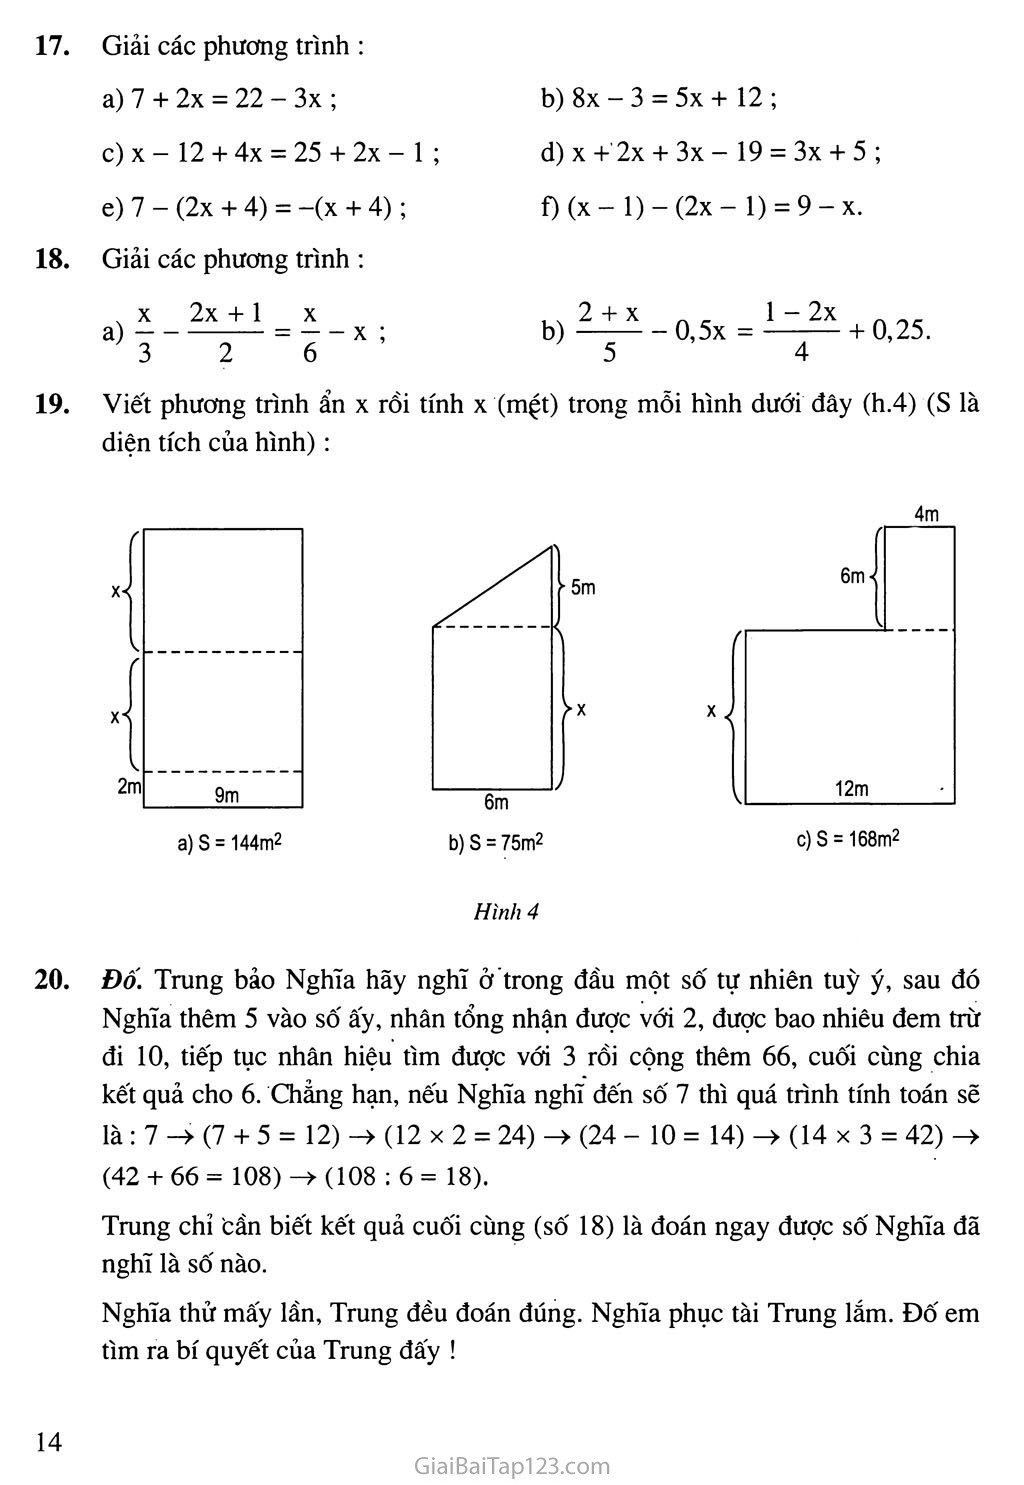 Bài 3. Phương trình đưa được về dạng ax + b = 0 trang 5